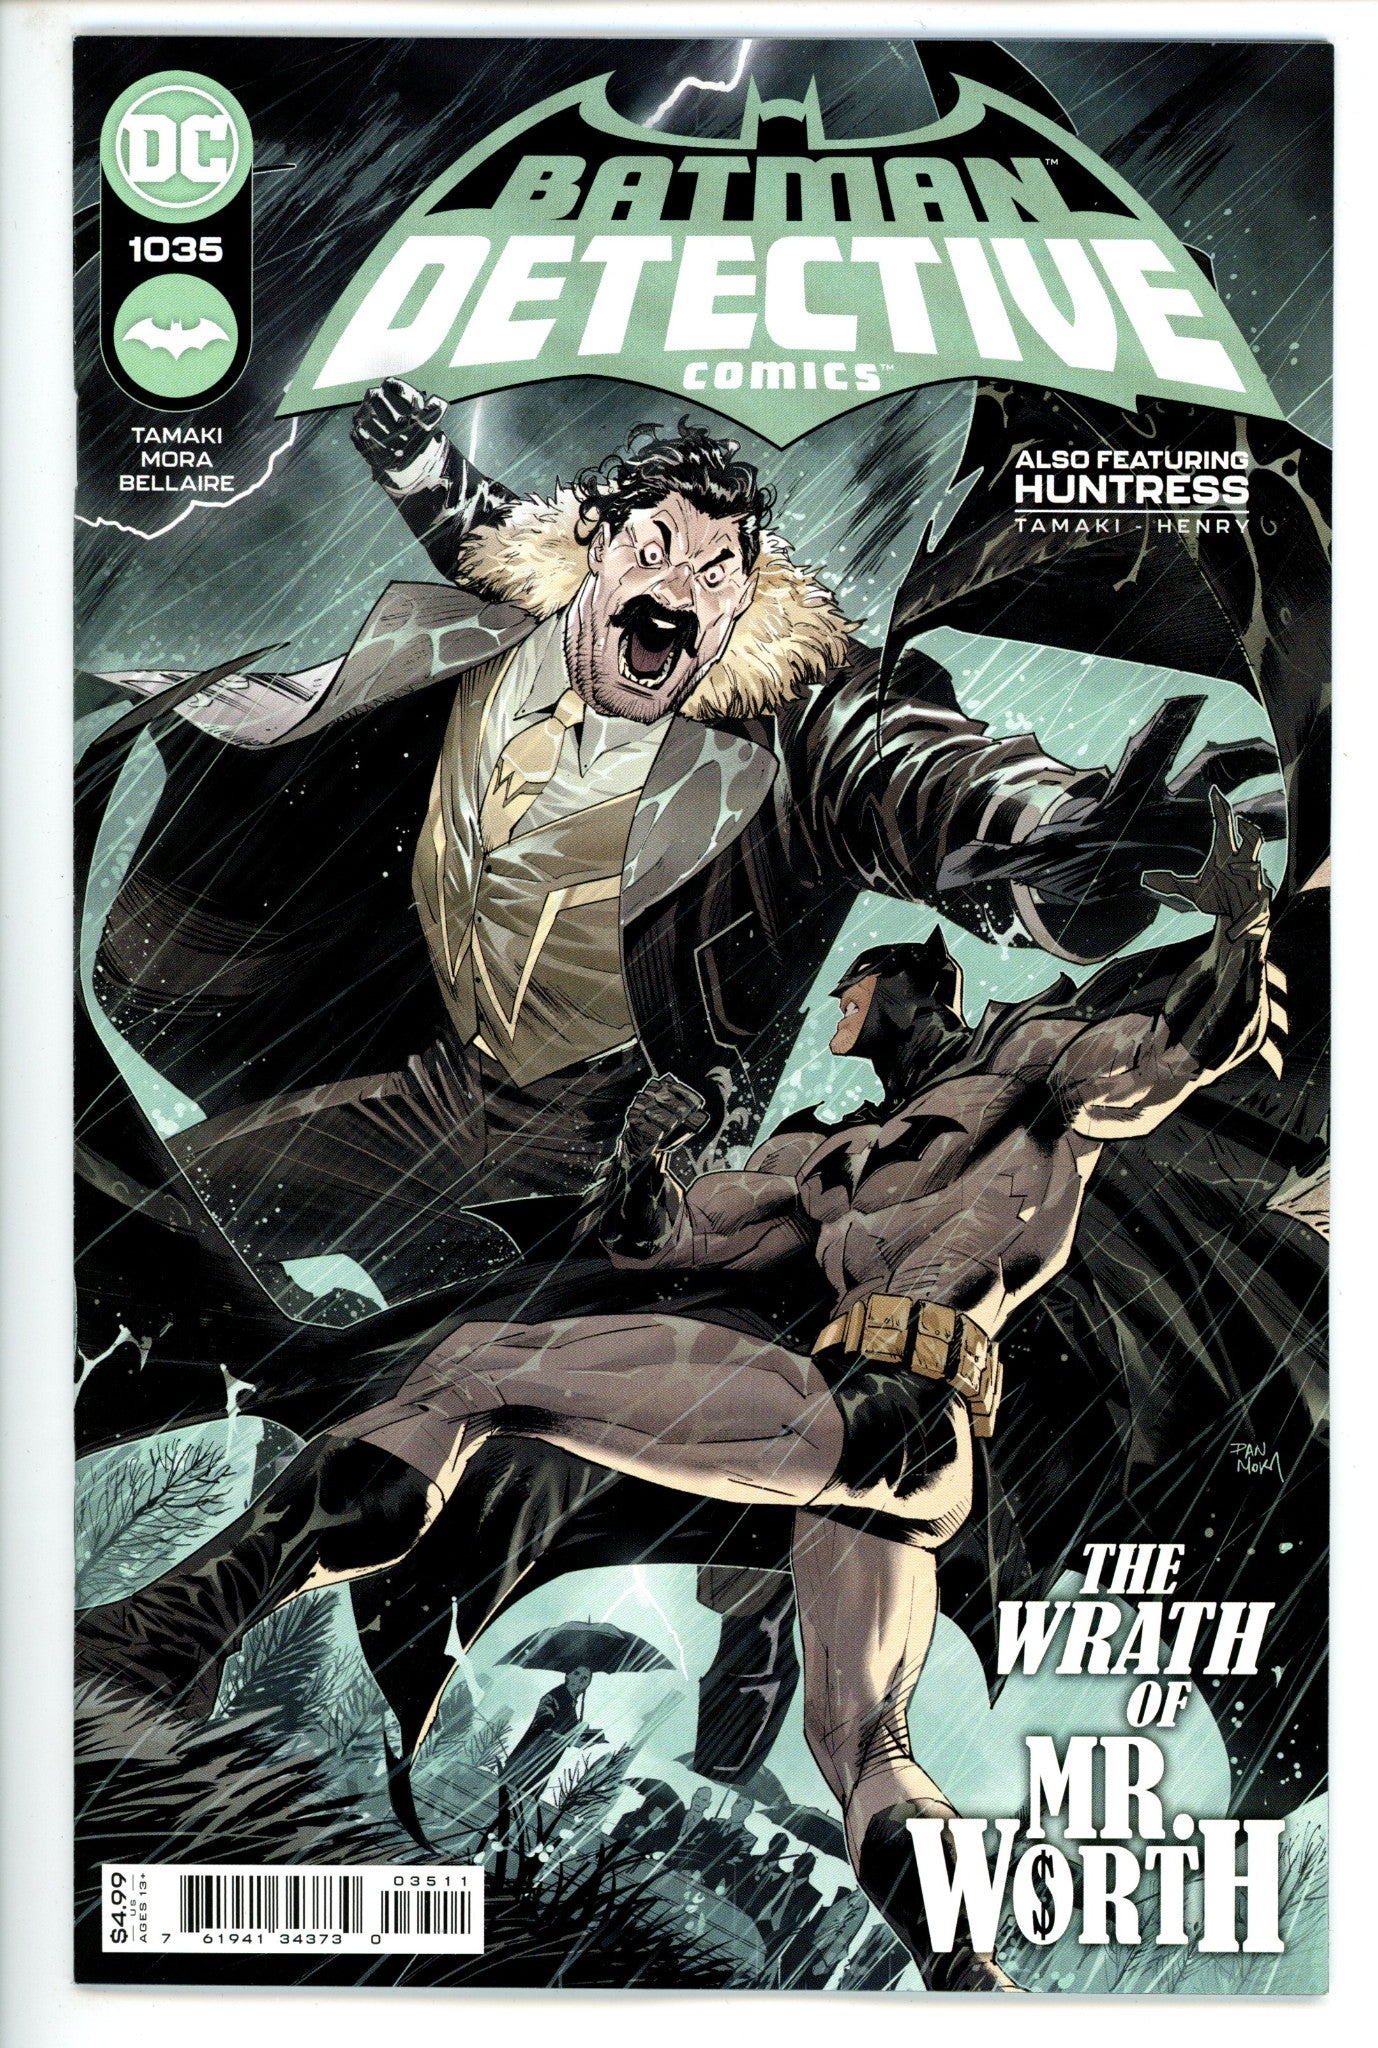 Detective Comics Vol 3 1035 (2021)